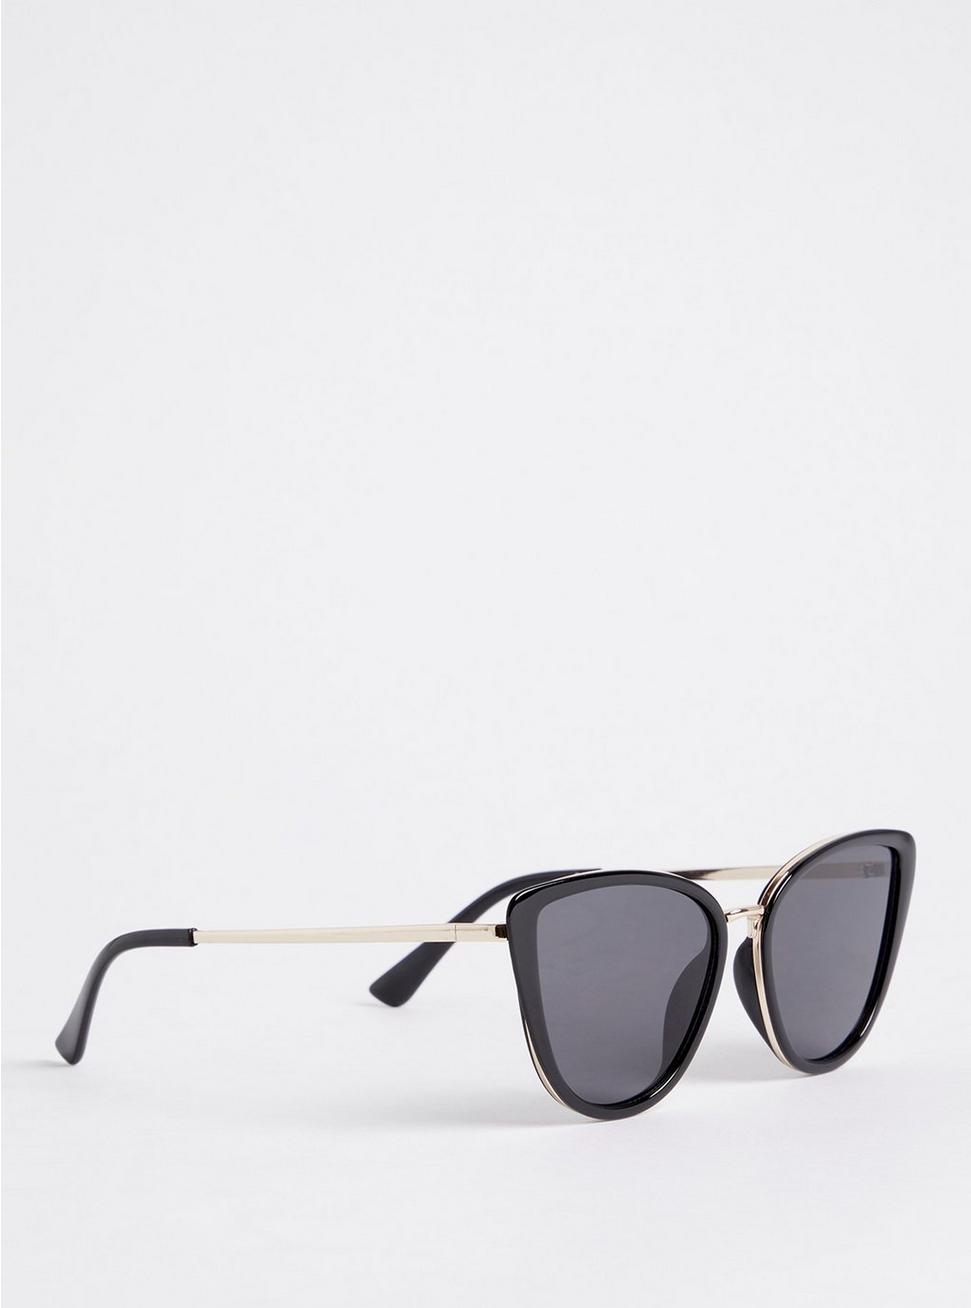 Cat Eye Smoke Lens Sunglasses - Black, , alternate